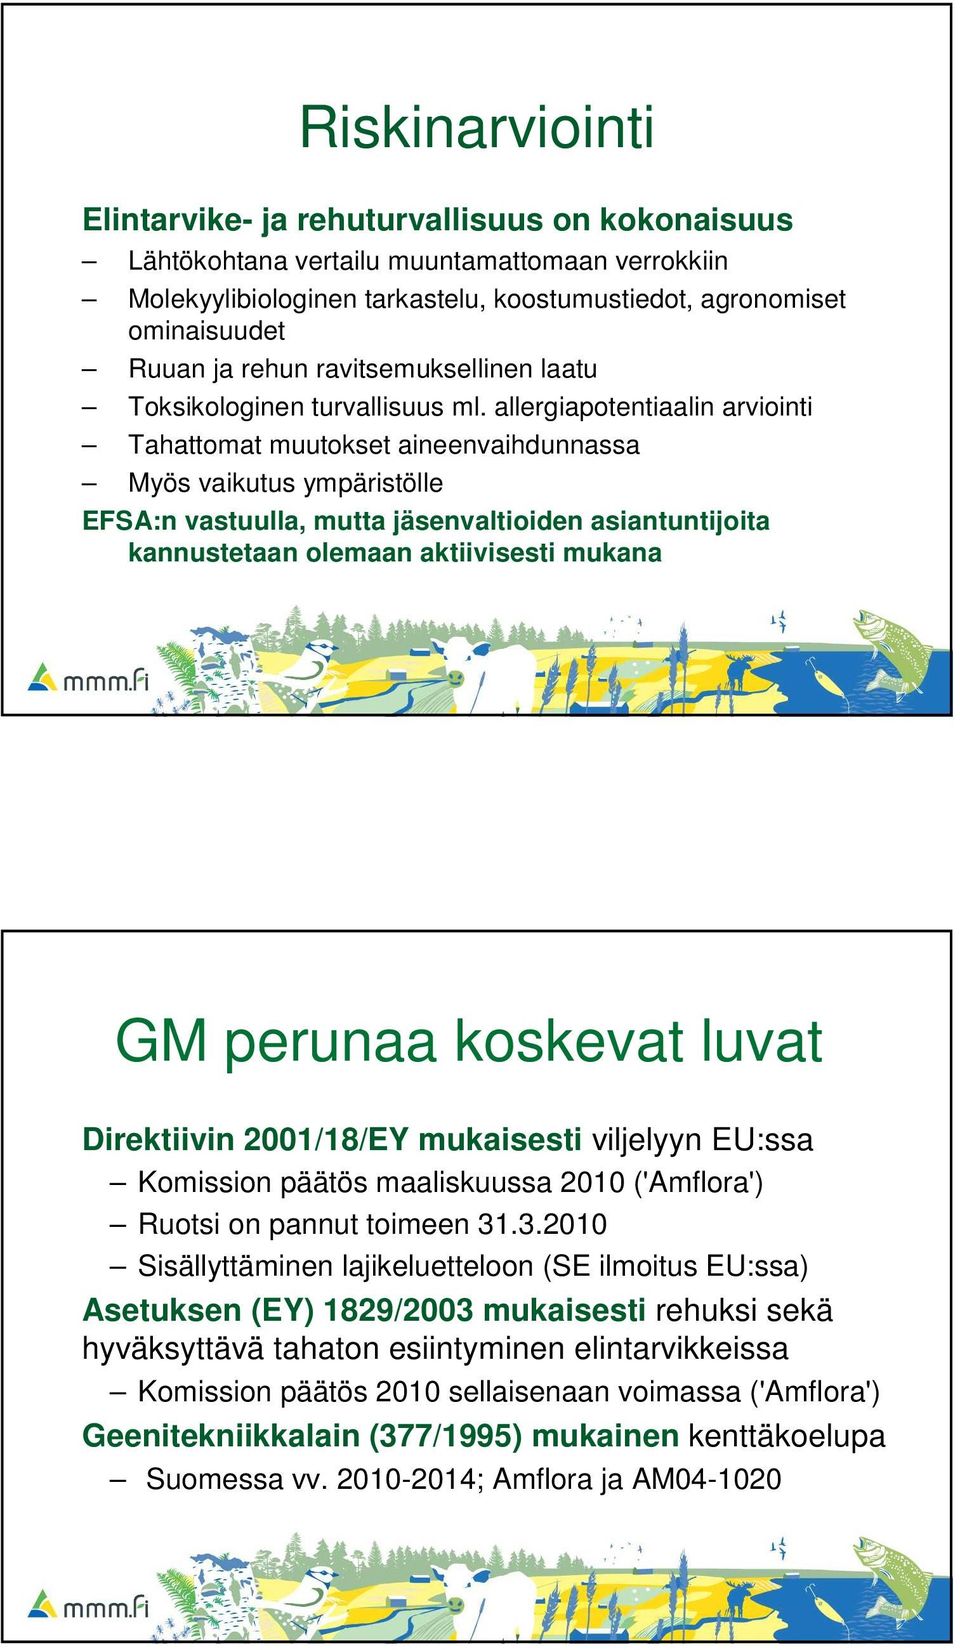 allergiapotentiaalin arviointi Tahattomat muutokset aineenvaihdunnassa Myös vaikutus ympäristölle EFSA:n vastuulla, mutta jäsenvaltioiden asiantuntijoita kannustetaan olemaan aktiivisesti mukana GM